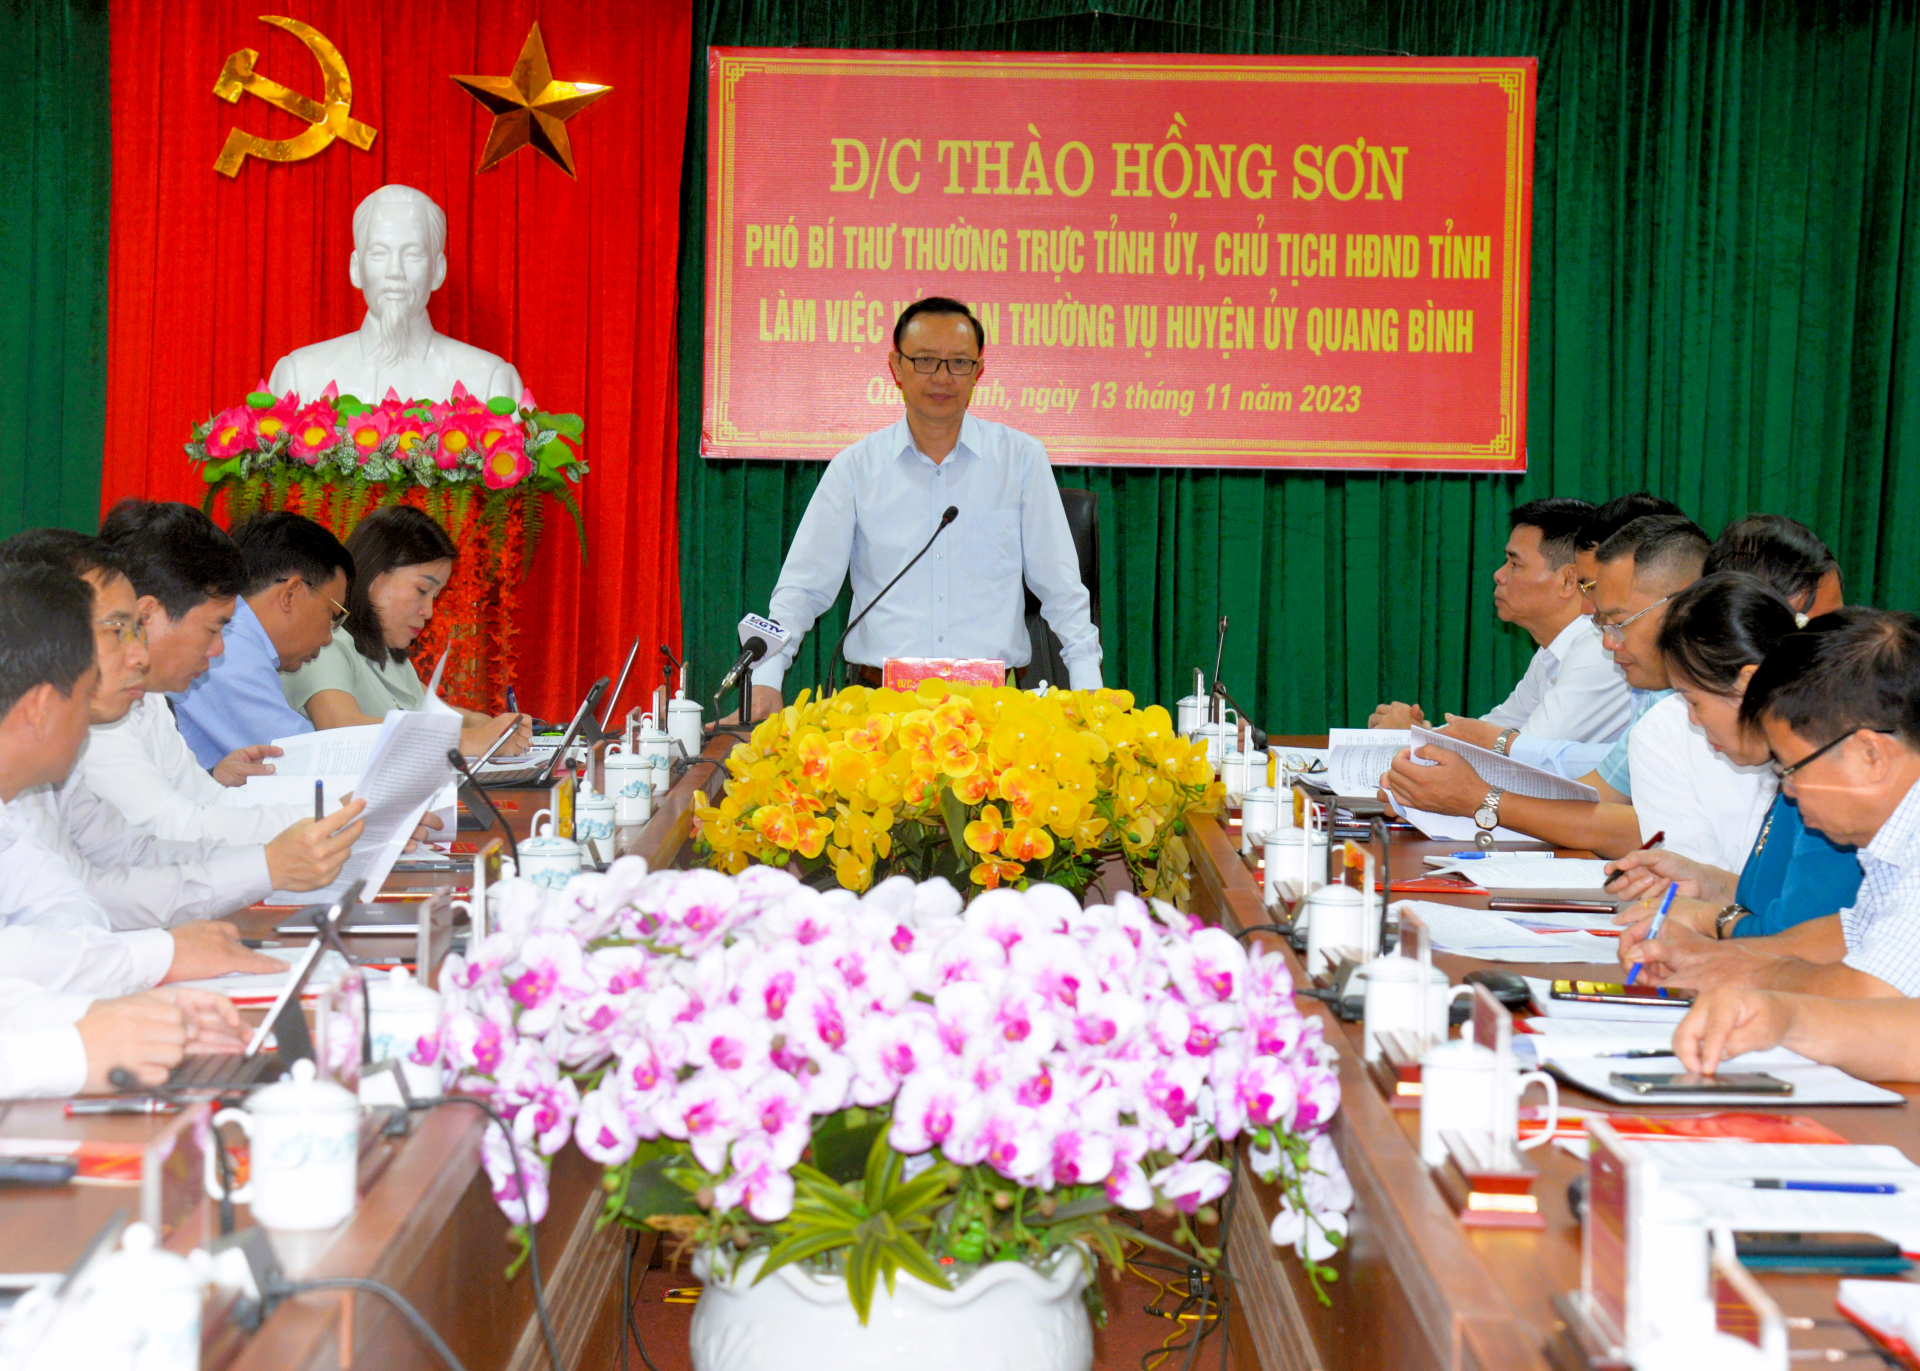 Phó Bí thư Thường trực Tỉnh ủy, Chủ tịch HĐND tỉnh Thào Hồng Sơn phát biểu kết luận buổi làm việc.